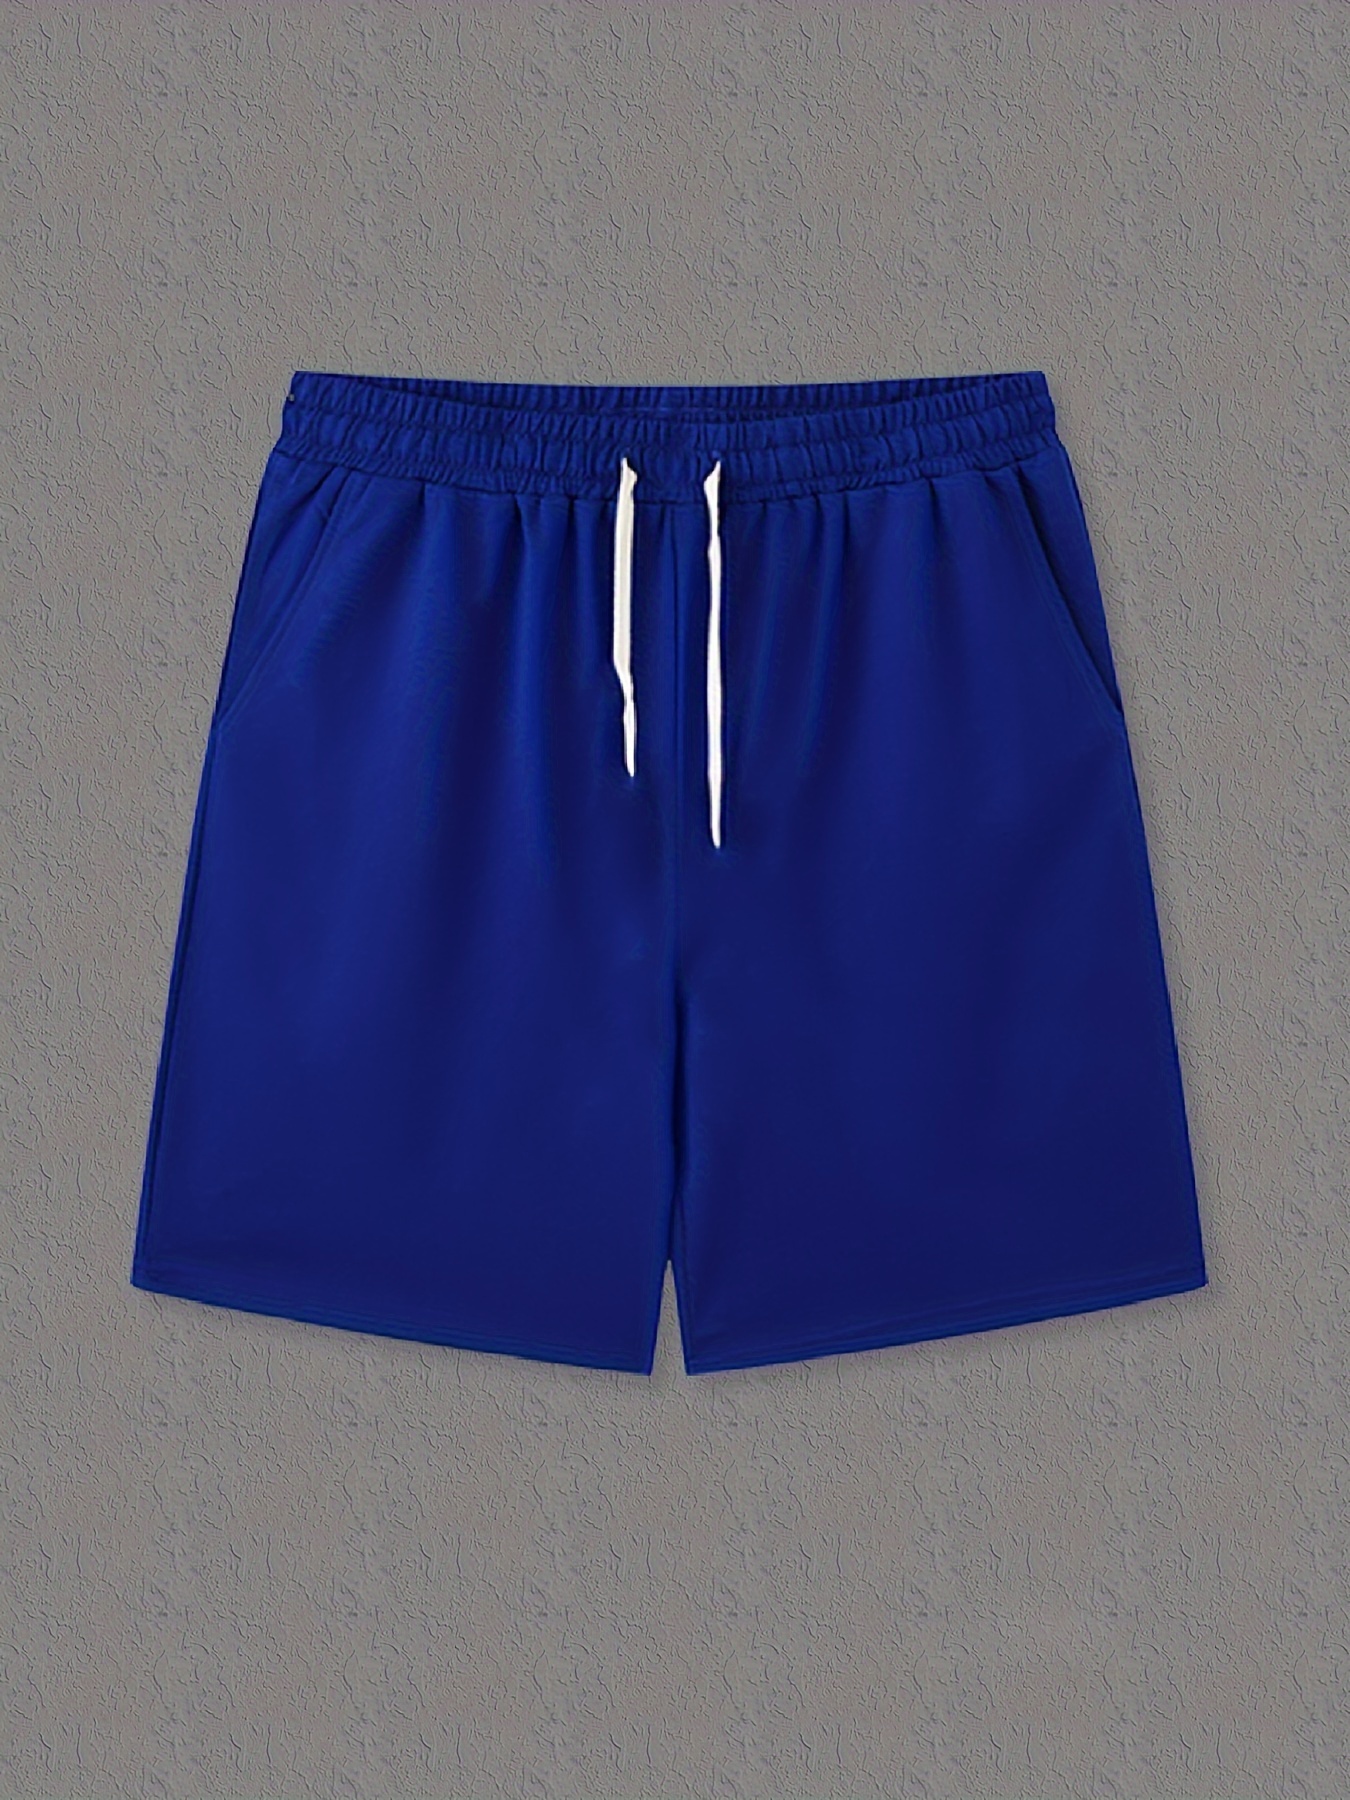 Solid Color Capri Shorts Drawstrings Men's Casual Elastic - Temu